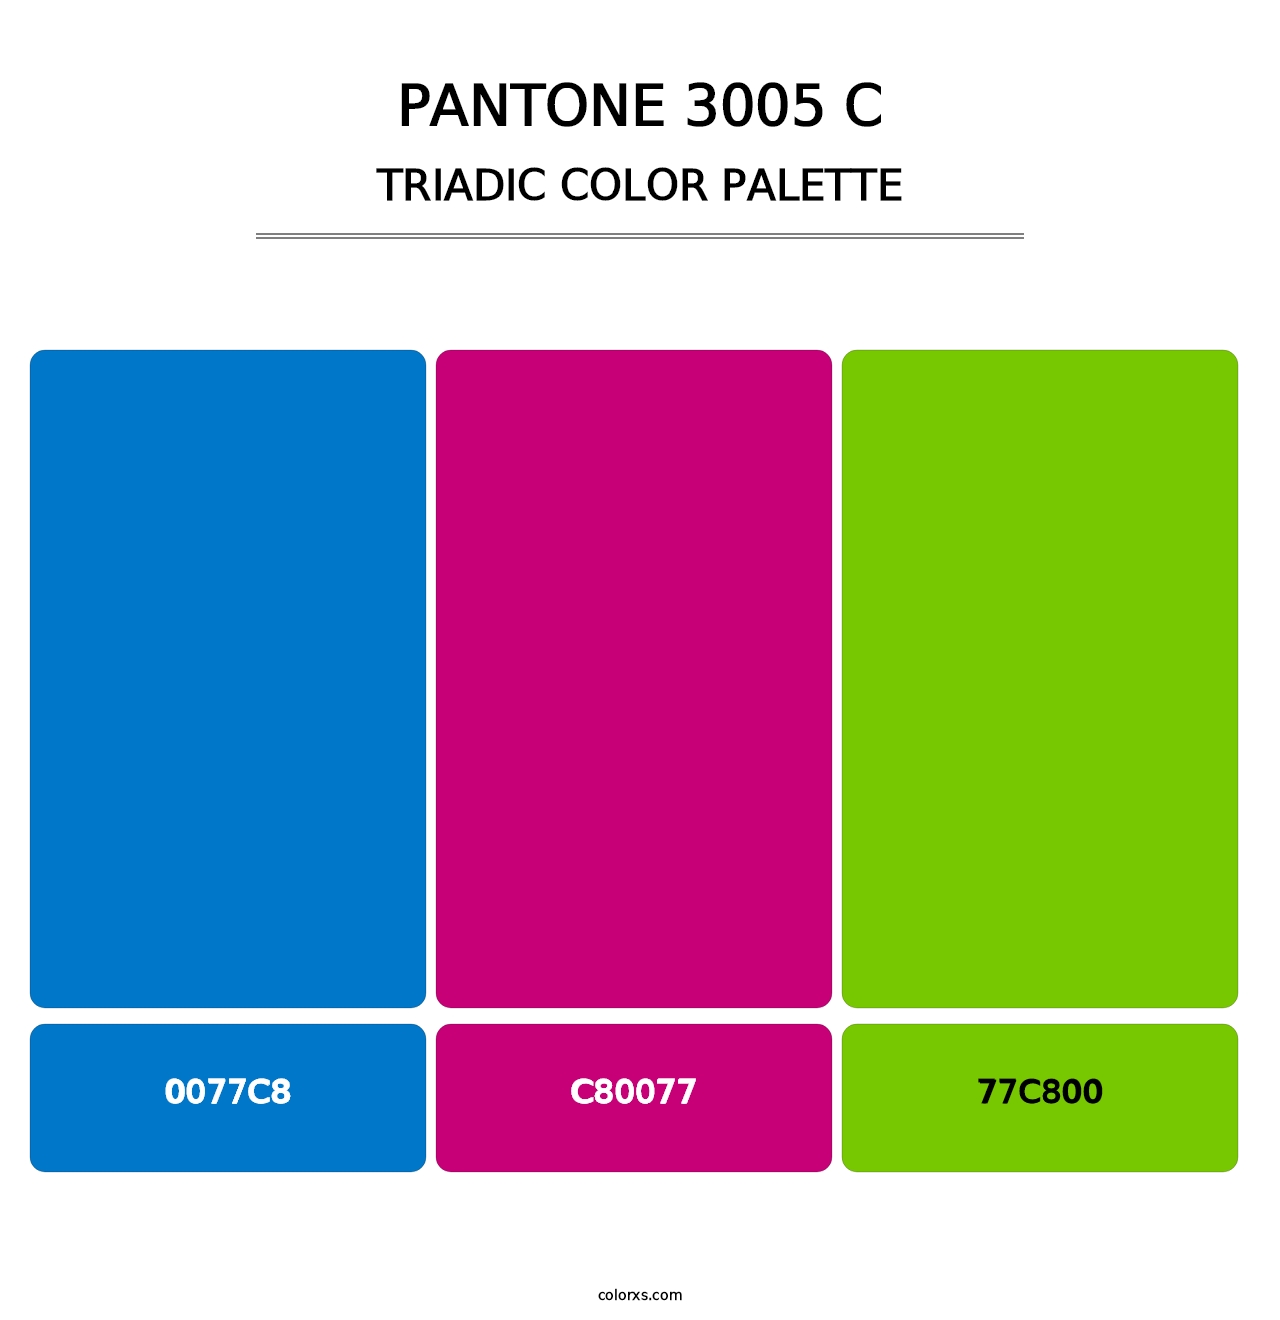 PANTONE 3005 C - Triadic Color Palette